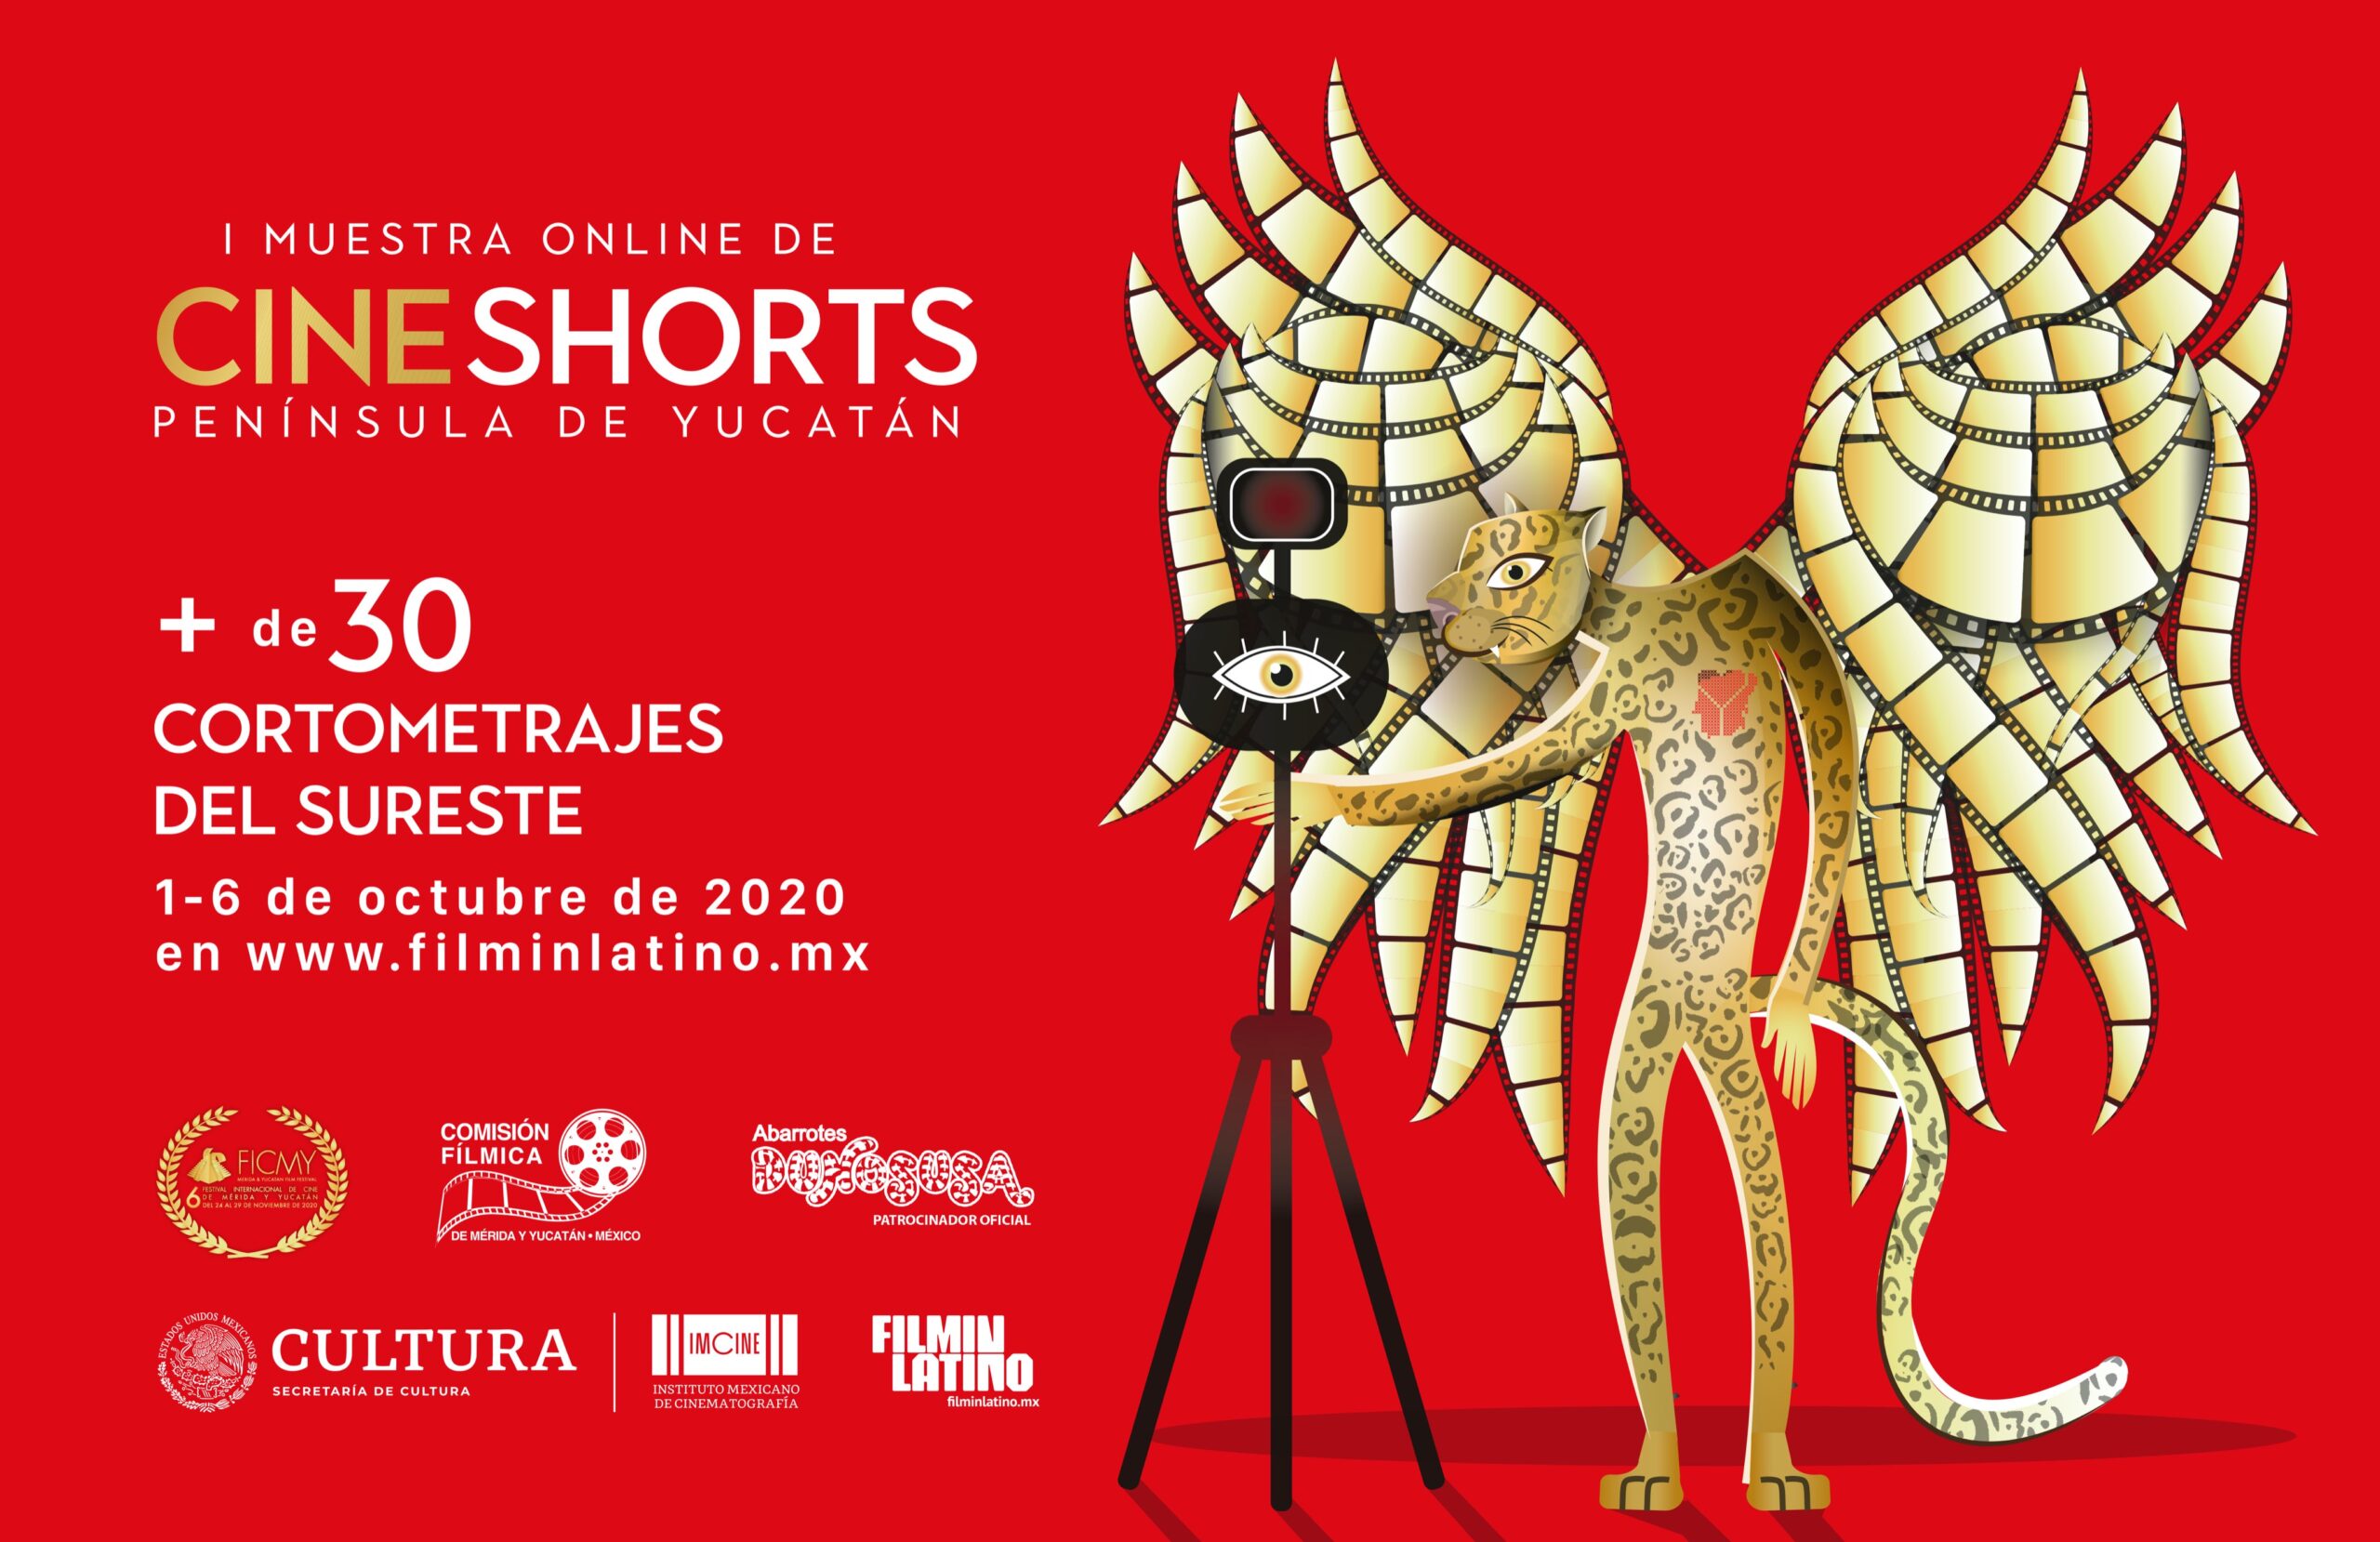 Hoy arranca la Muestra Online de Cine Shorts Península de Yucatán